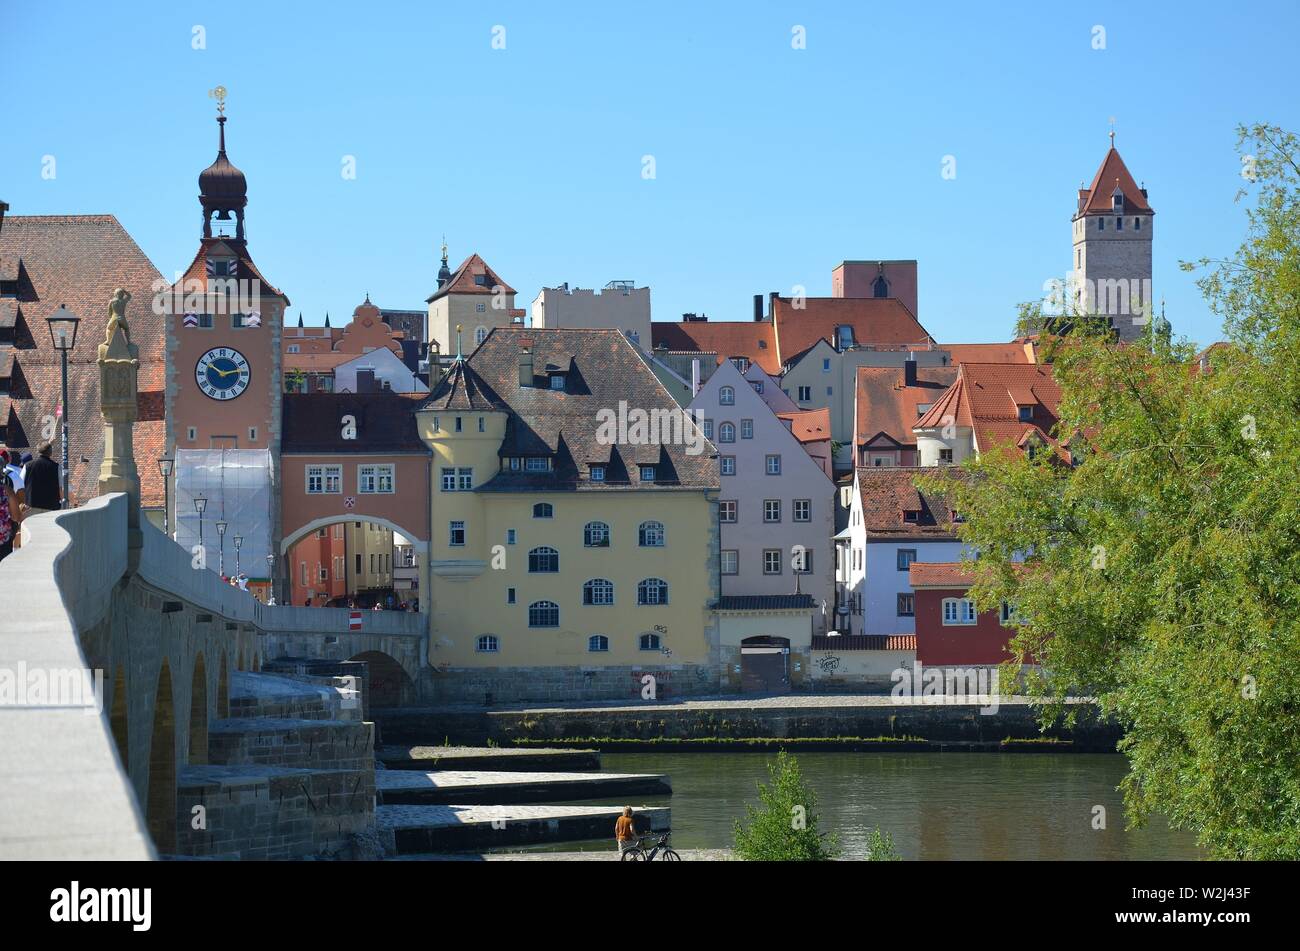 Ratisbona, Oberpfalz, Bayern: historische Stadt an der Donau: Blick von der steinernen Brücke auf die Altstadt Foto Stock